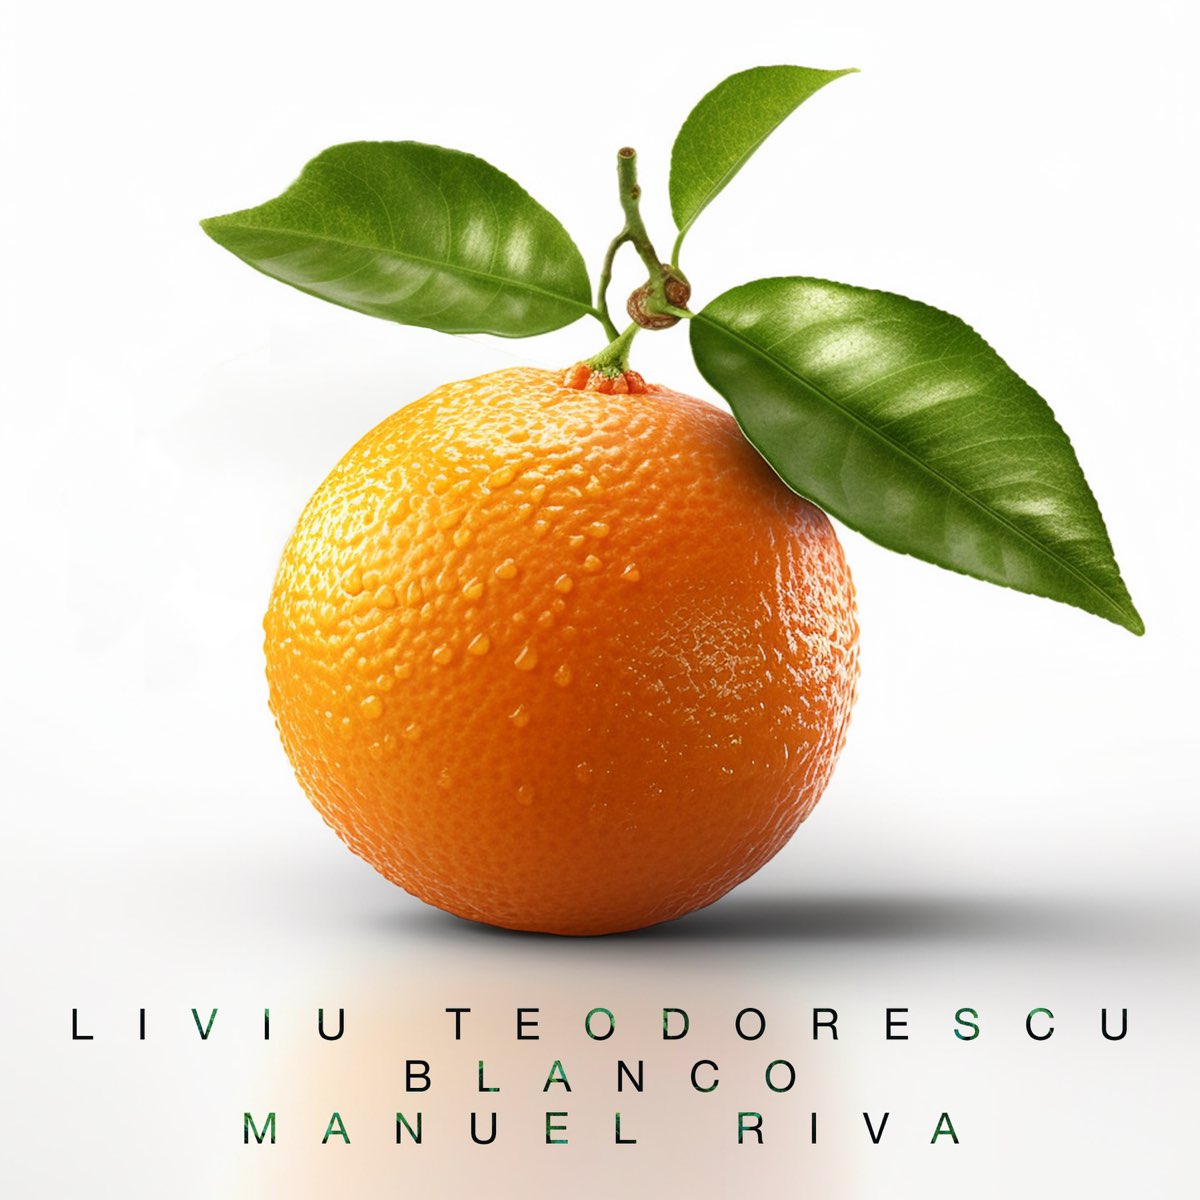 Liviu Teodorescu, BLANCO, & Manuel Riva Portocală cover artwork